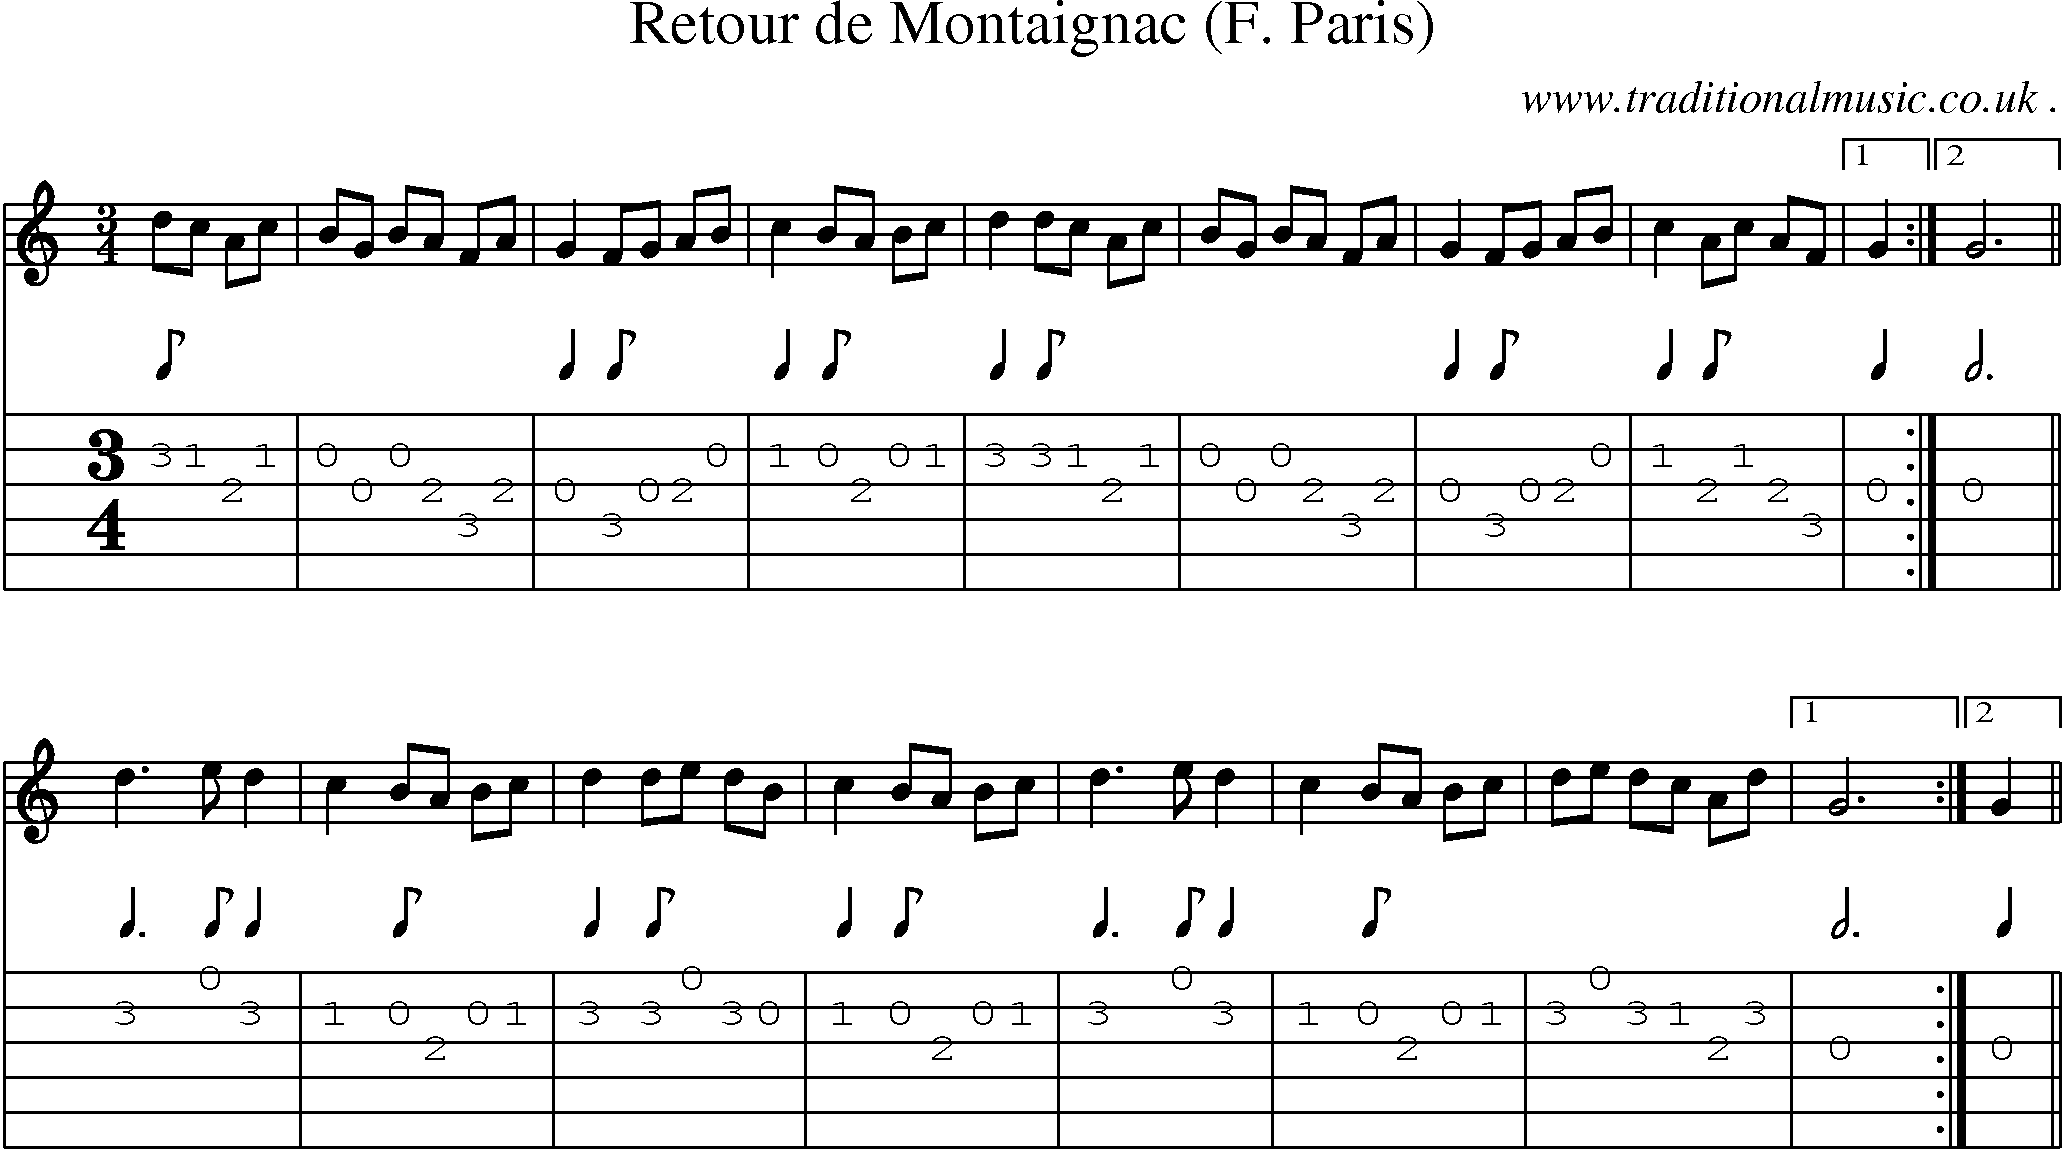 Sheet-Music and Guitar Tabs for Retour De Montaignac (f Paris)